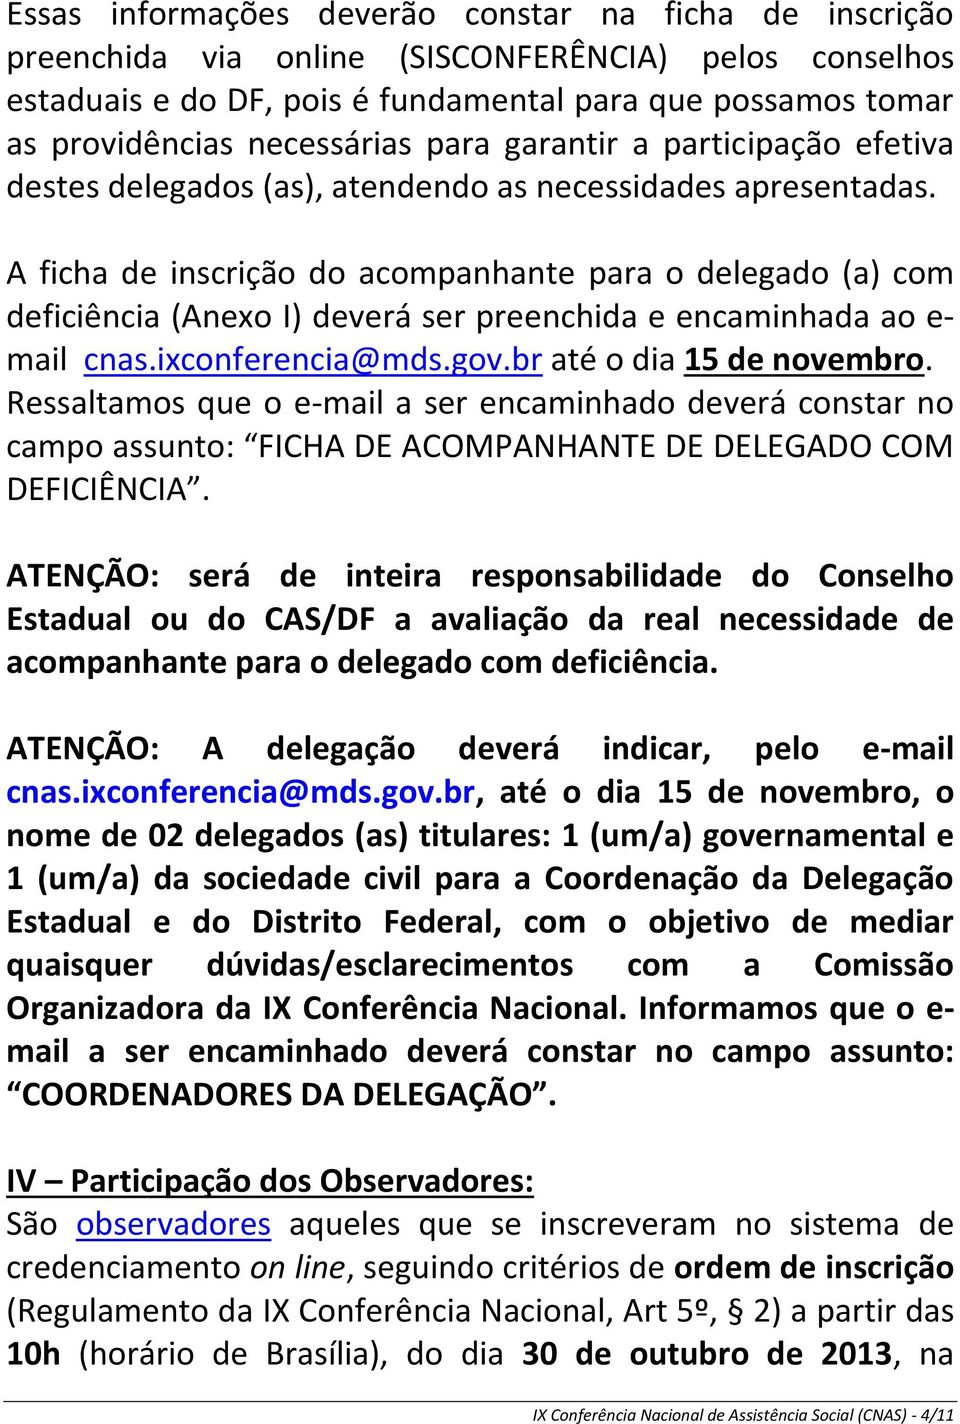 A ficha de inscrição do acompanhante para o delegado (a) com deficiência (Anexo I) deverá ser preenchida e encaminhada ao e- mail cnas.ixconferencia@mds.gov.br até o dia 15 de novembro.